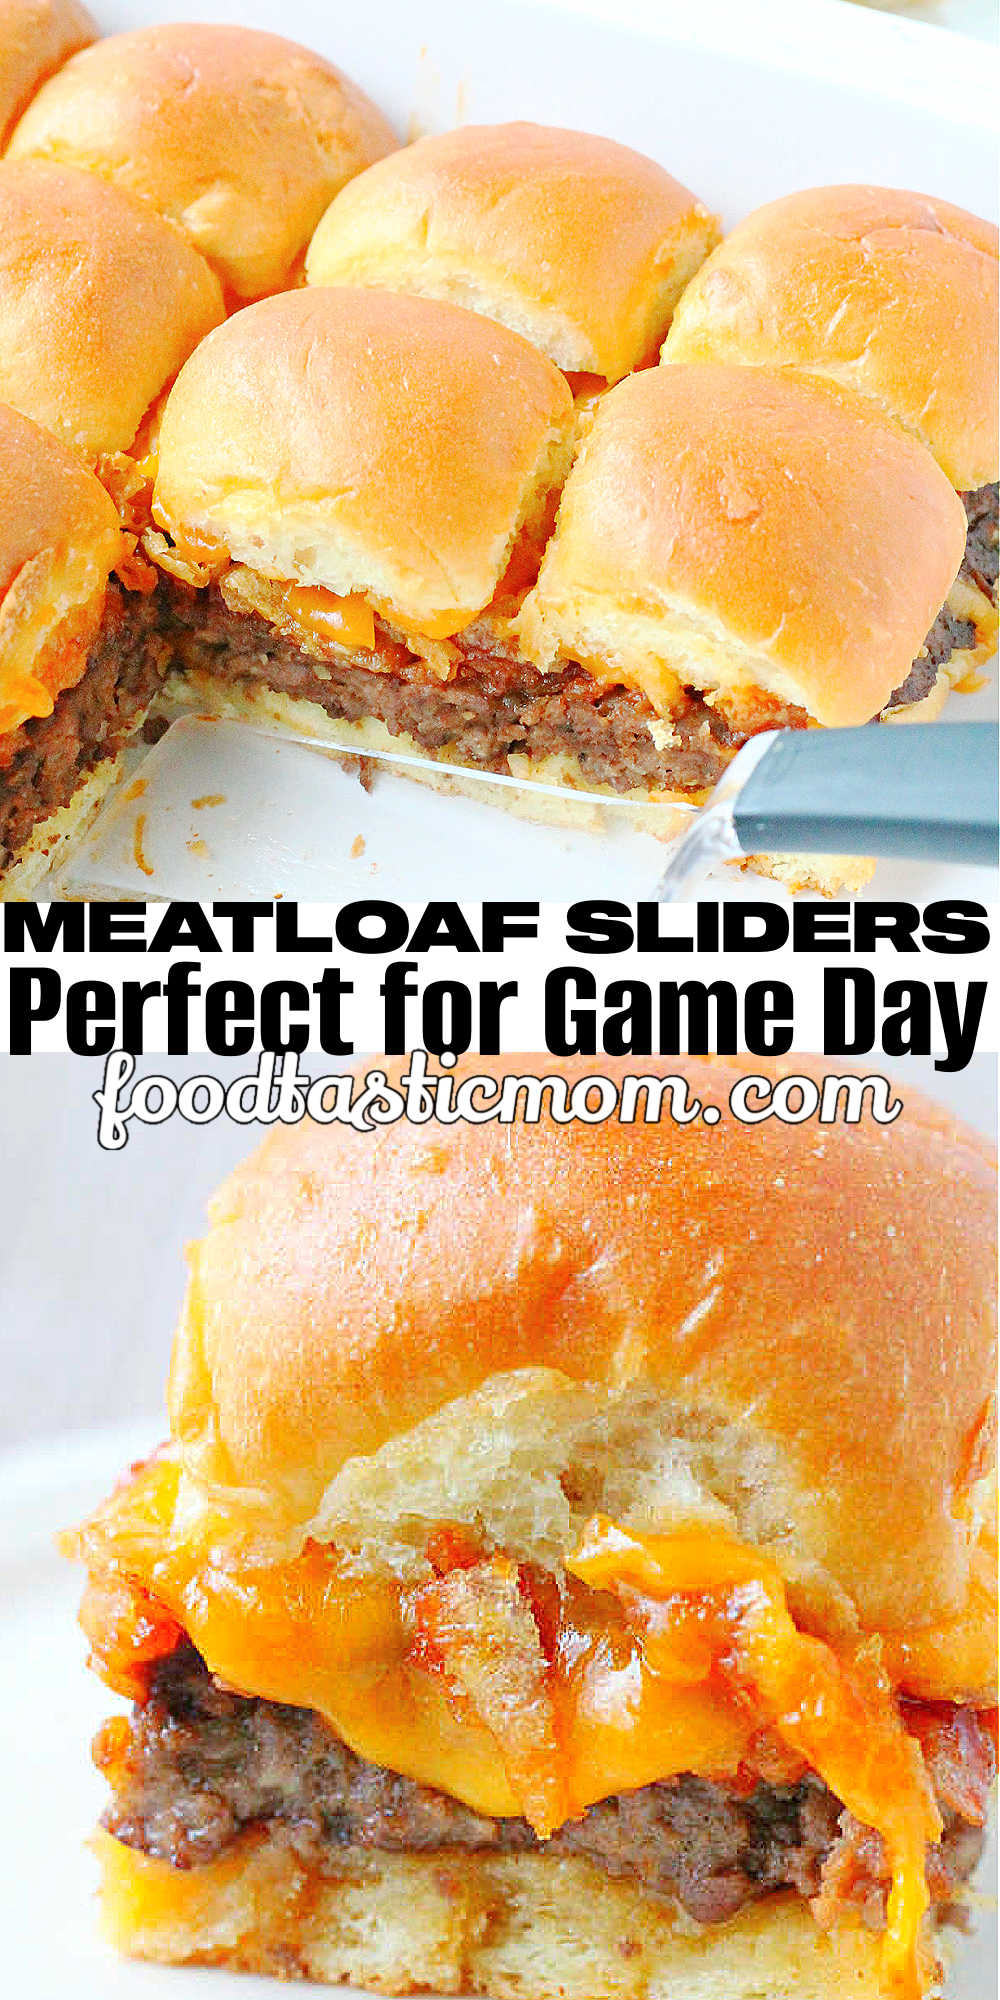 Meatloaf Sliders | Foodtastic Mom #meatloafrecipes #sliderrecipes #meatloafsliders #gameday via @foodtasticmom